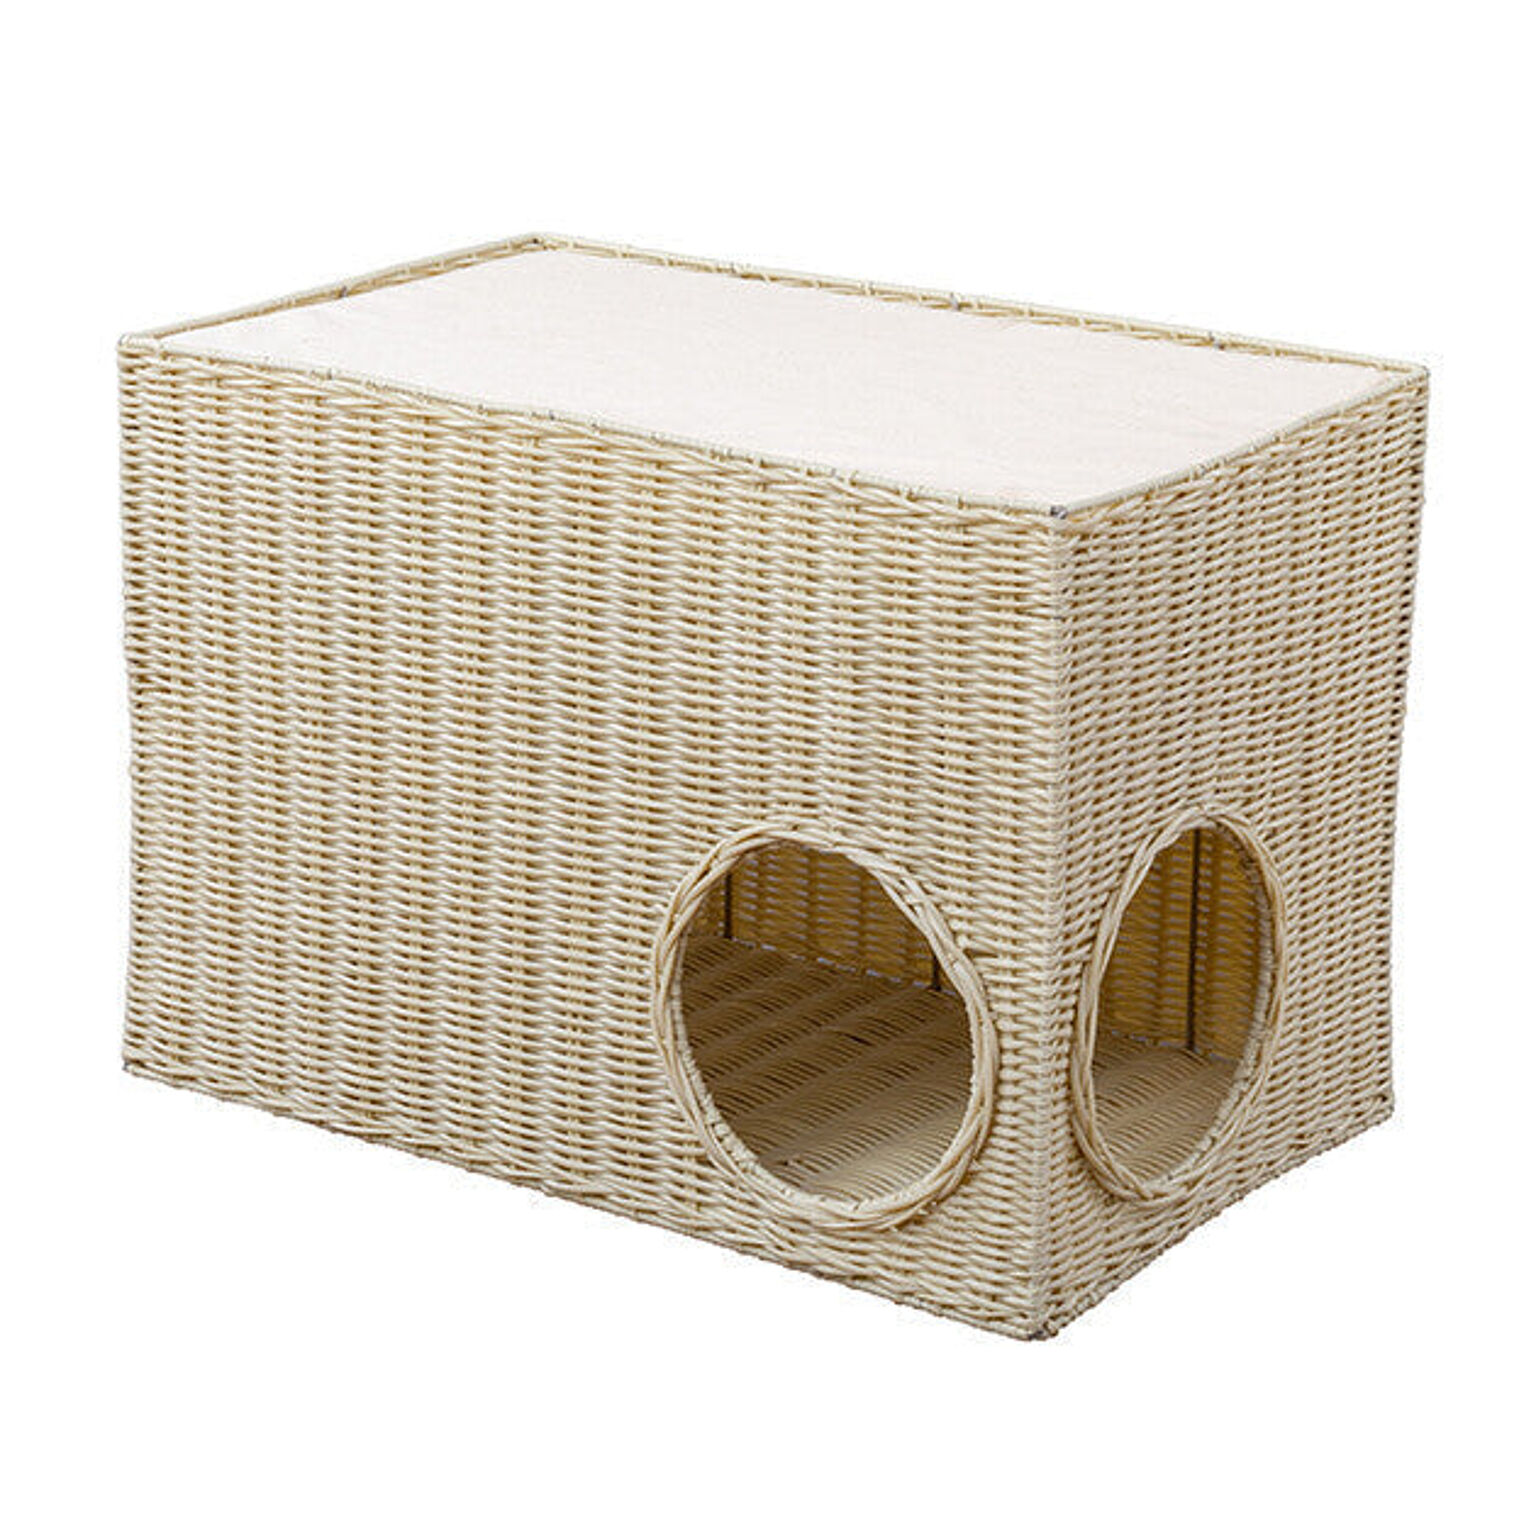 ソファーサイドキャットハウス 猫ベッド 洗える ラタン風 涼しい ボックス型 カゴ バスケット 穴付き キャットベッド クッション付き